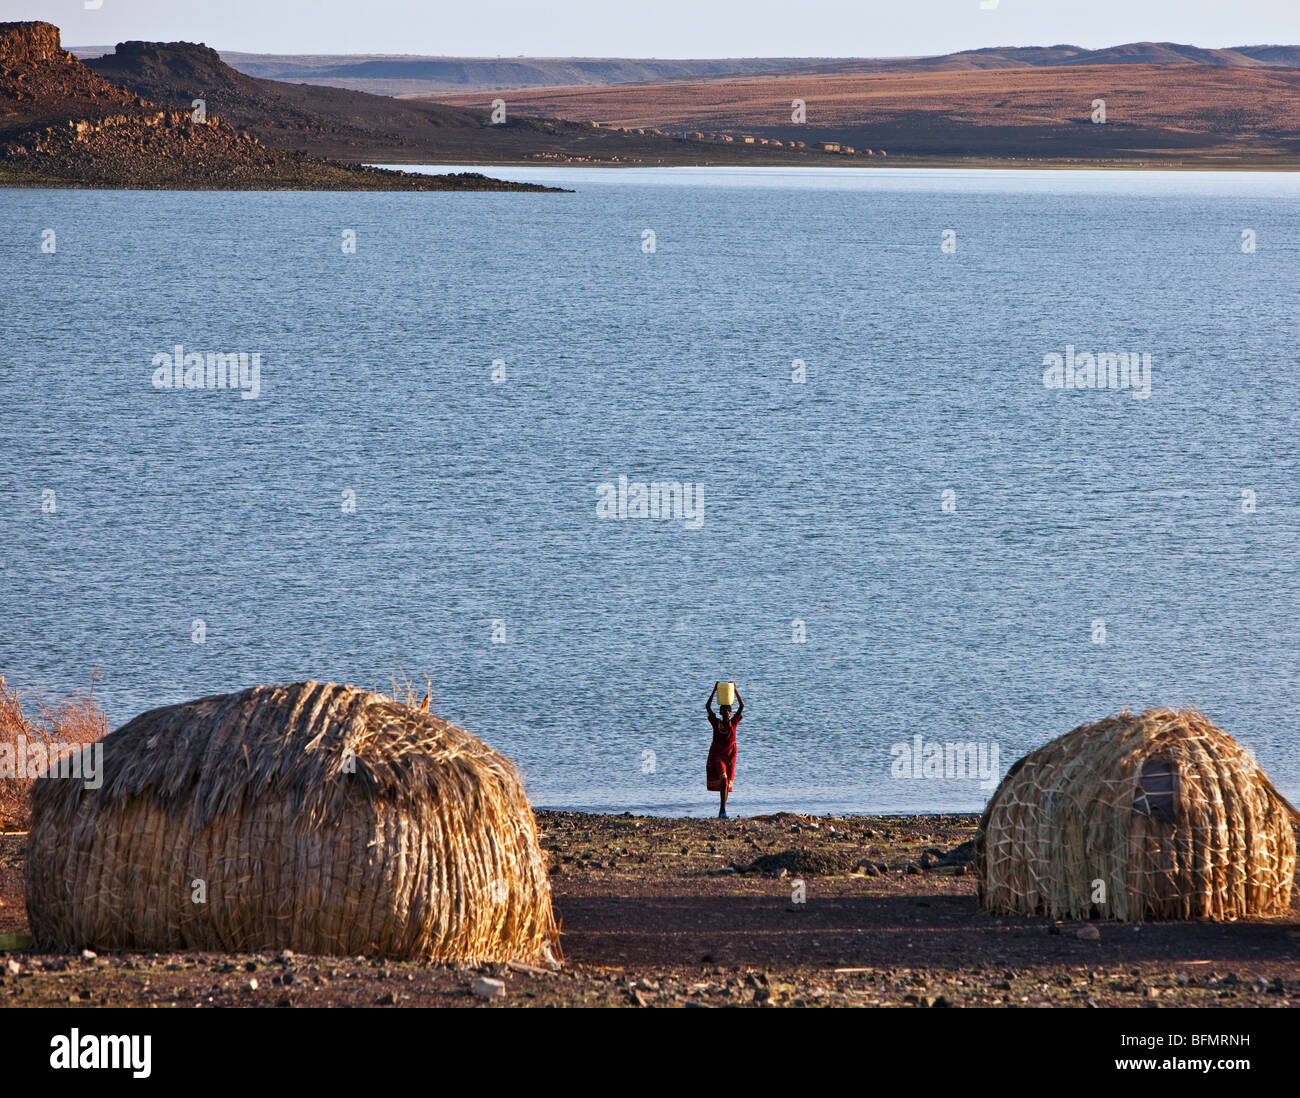 Un El Molo donna preleva acqua dal lago Turkana. Tipico a forma di cupola di El Molo case in primo piano sono fatte di canne. Foto Stock